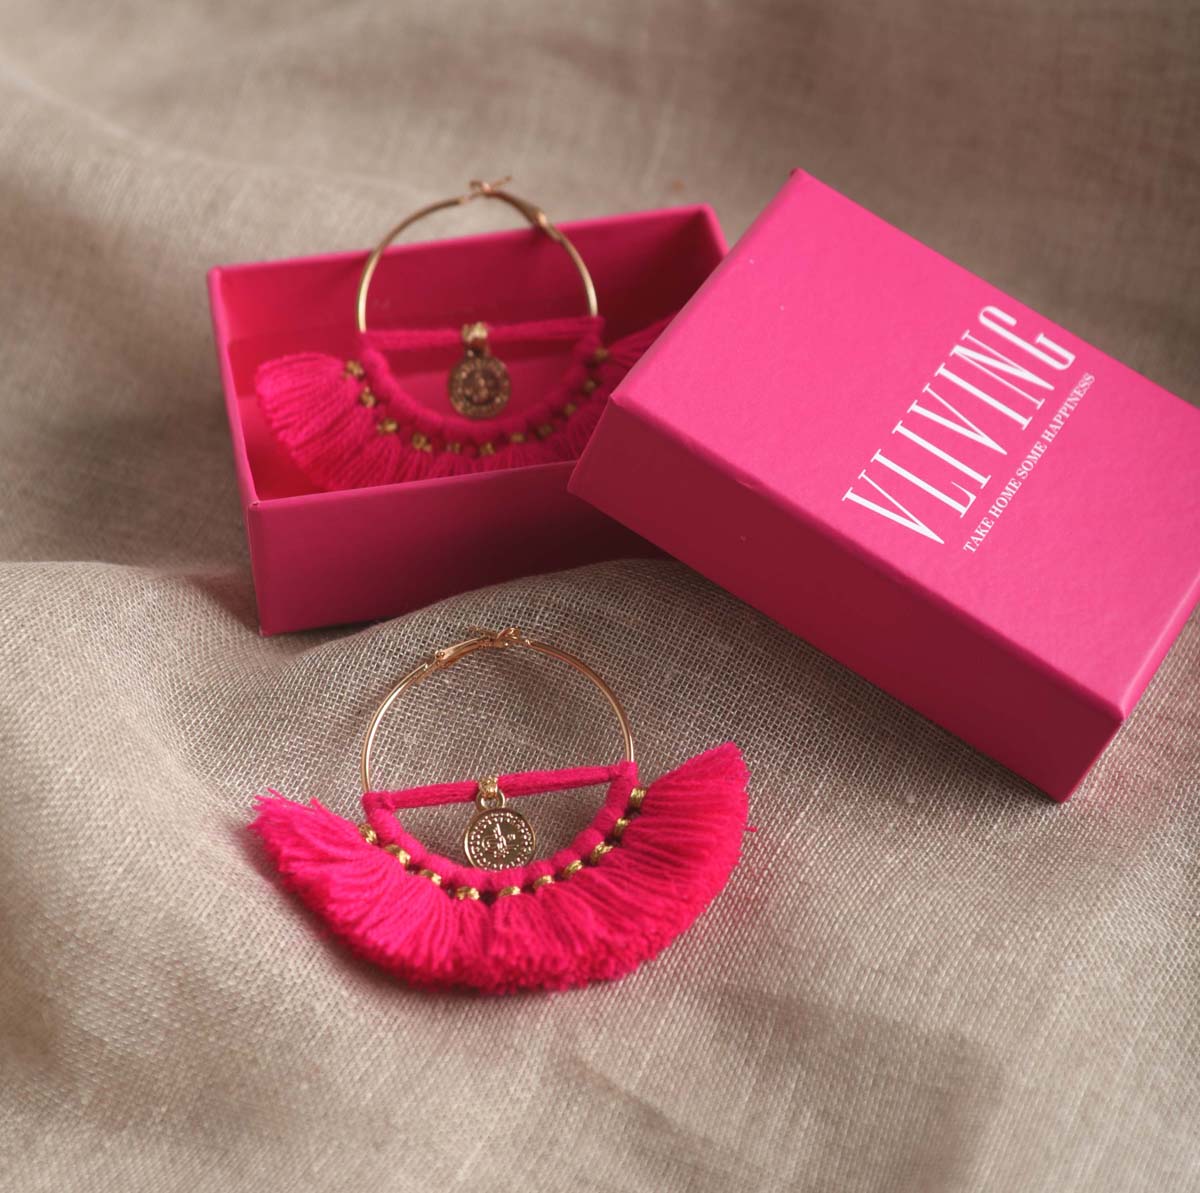 Hot Pink Hoops, threader earrings, Bohemian tribal earrings